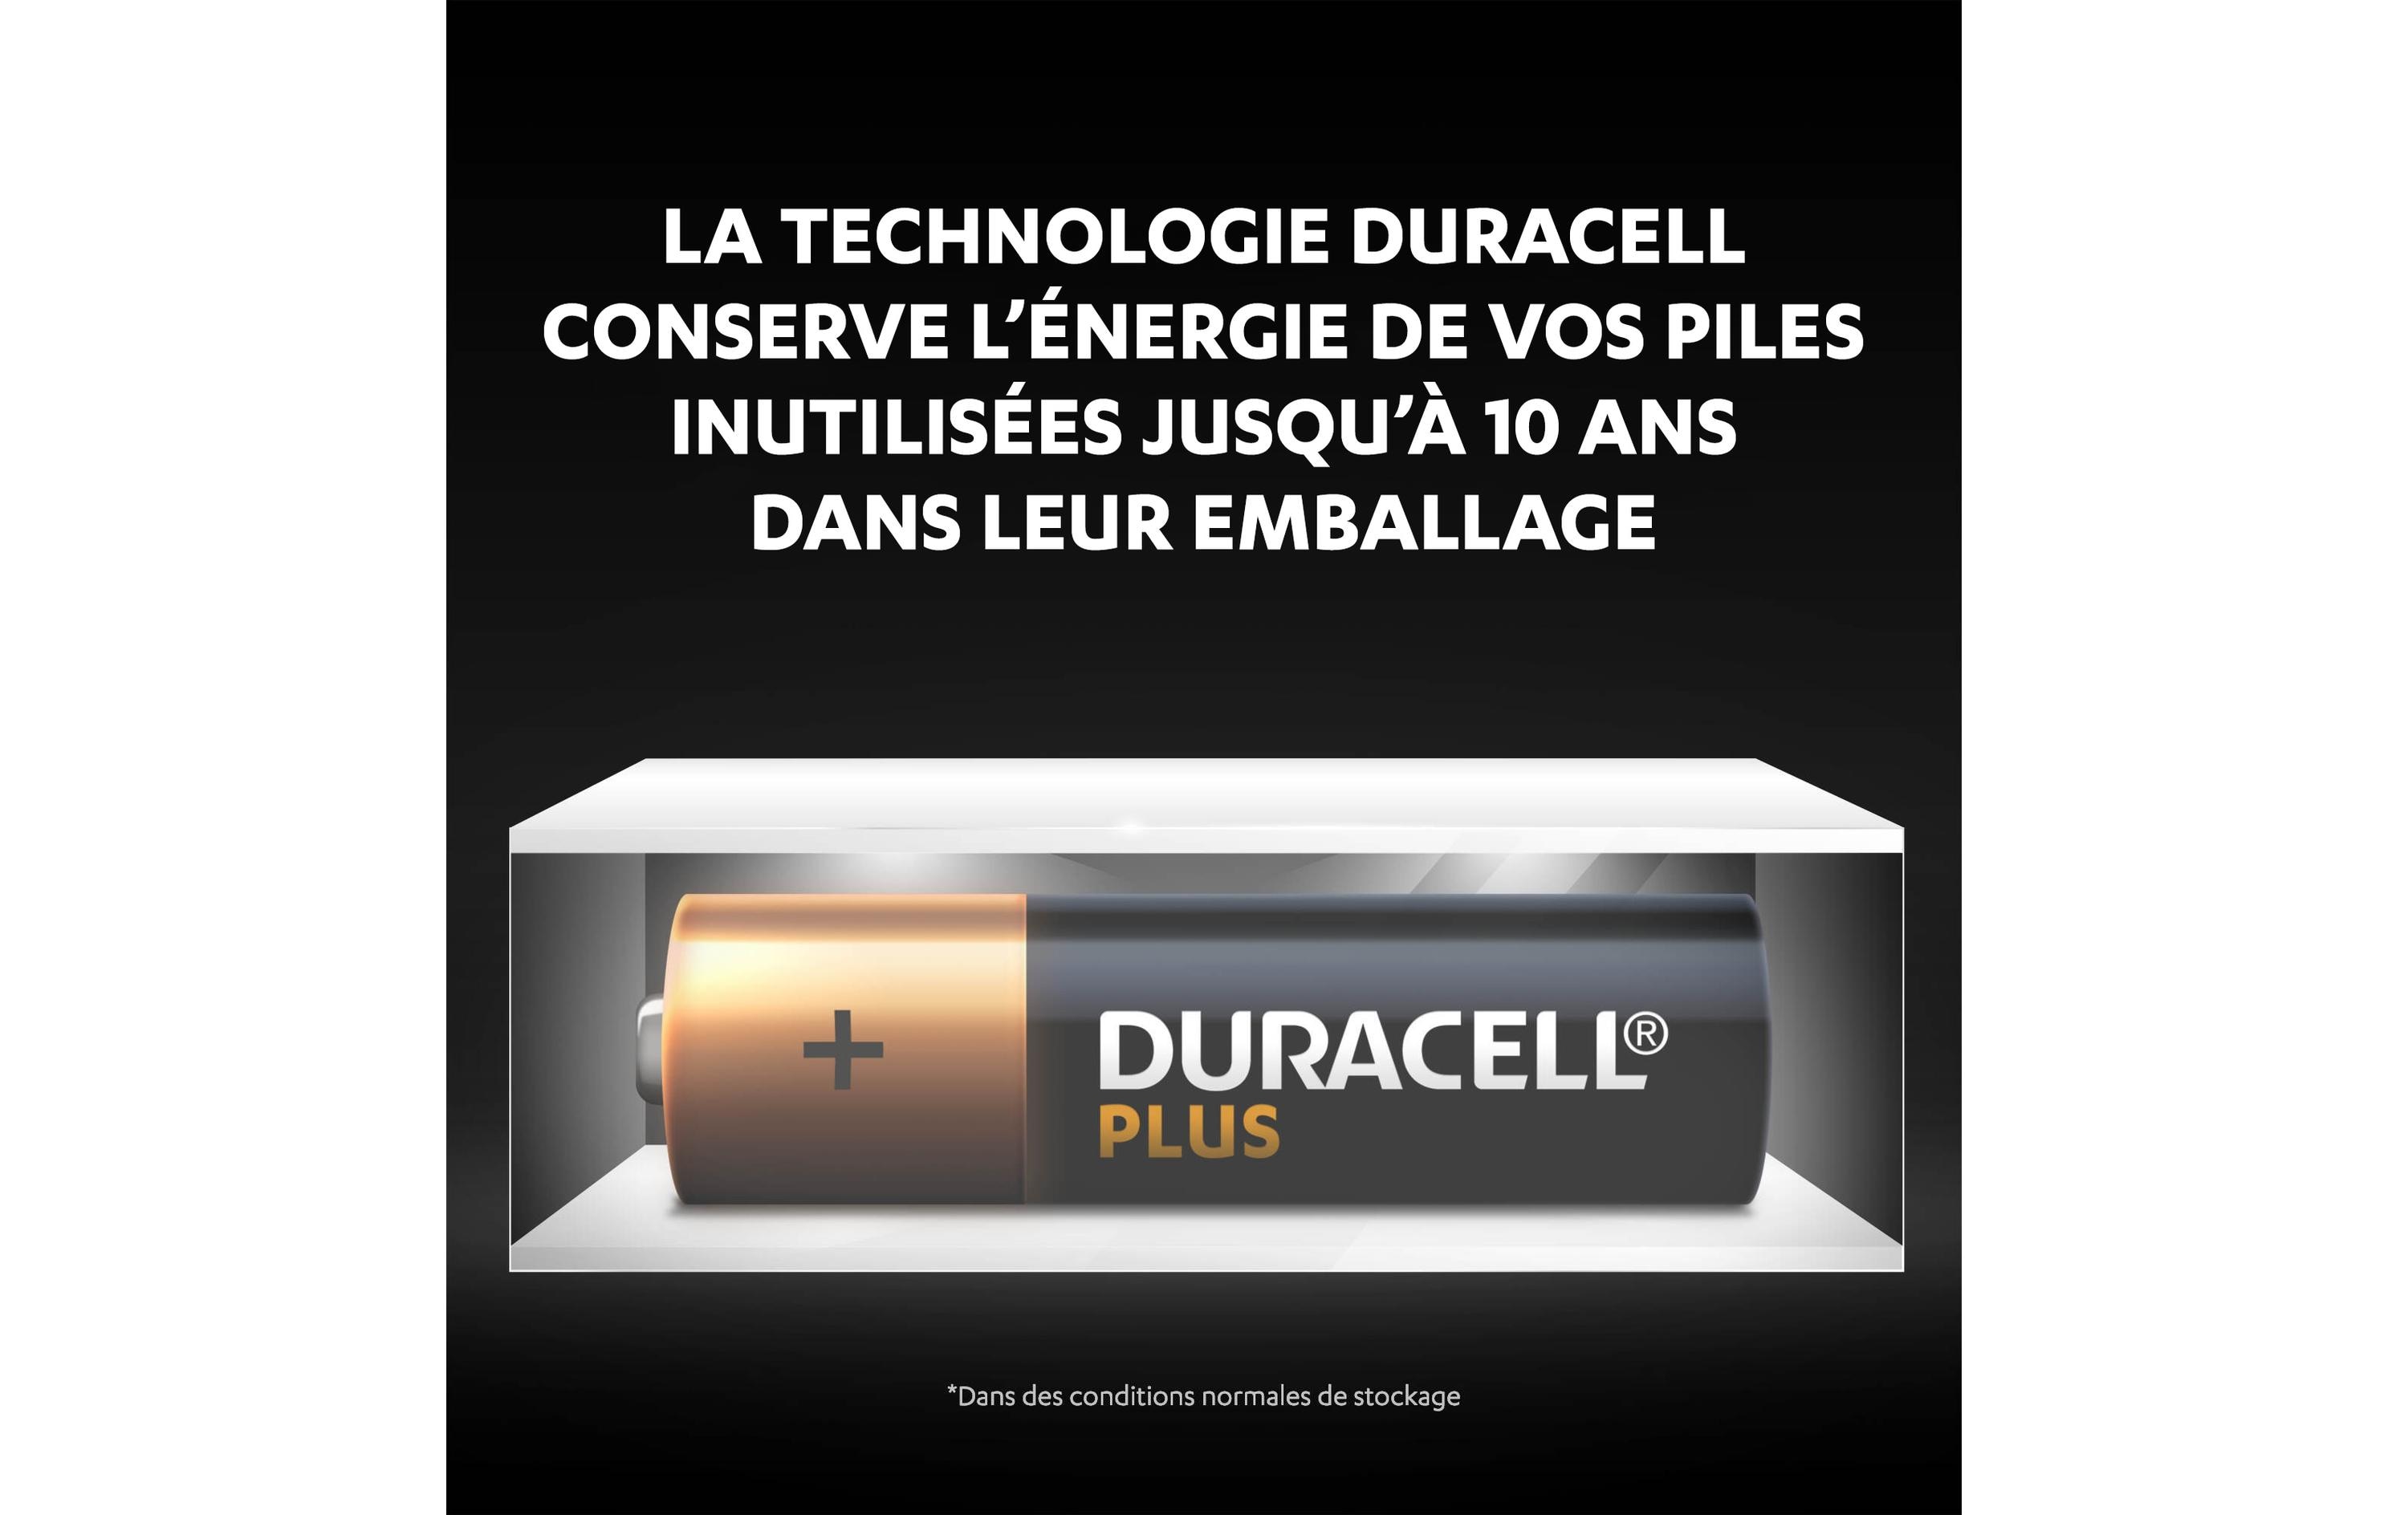 Duracell Batterie Plus Power MN1500 AA 8 Stück